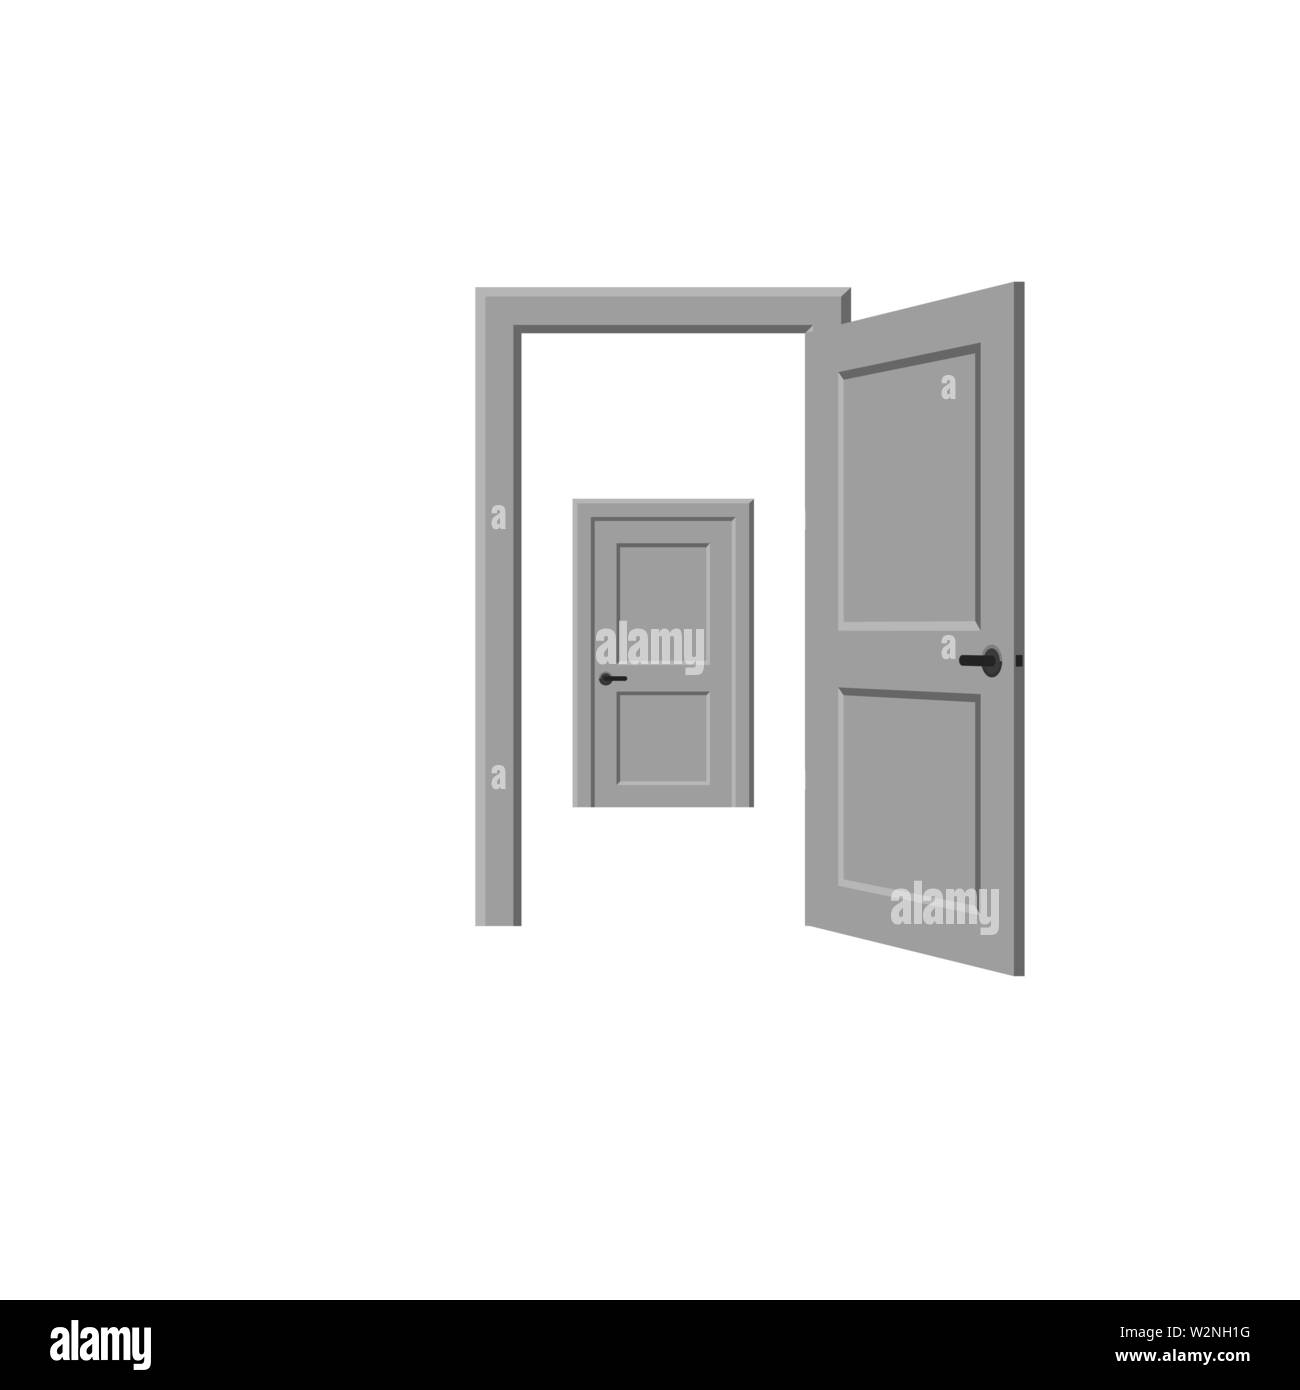 Open and closed door Stock Vector